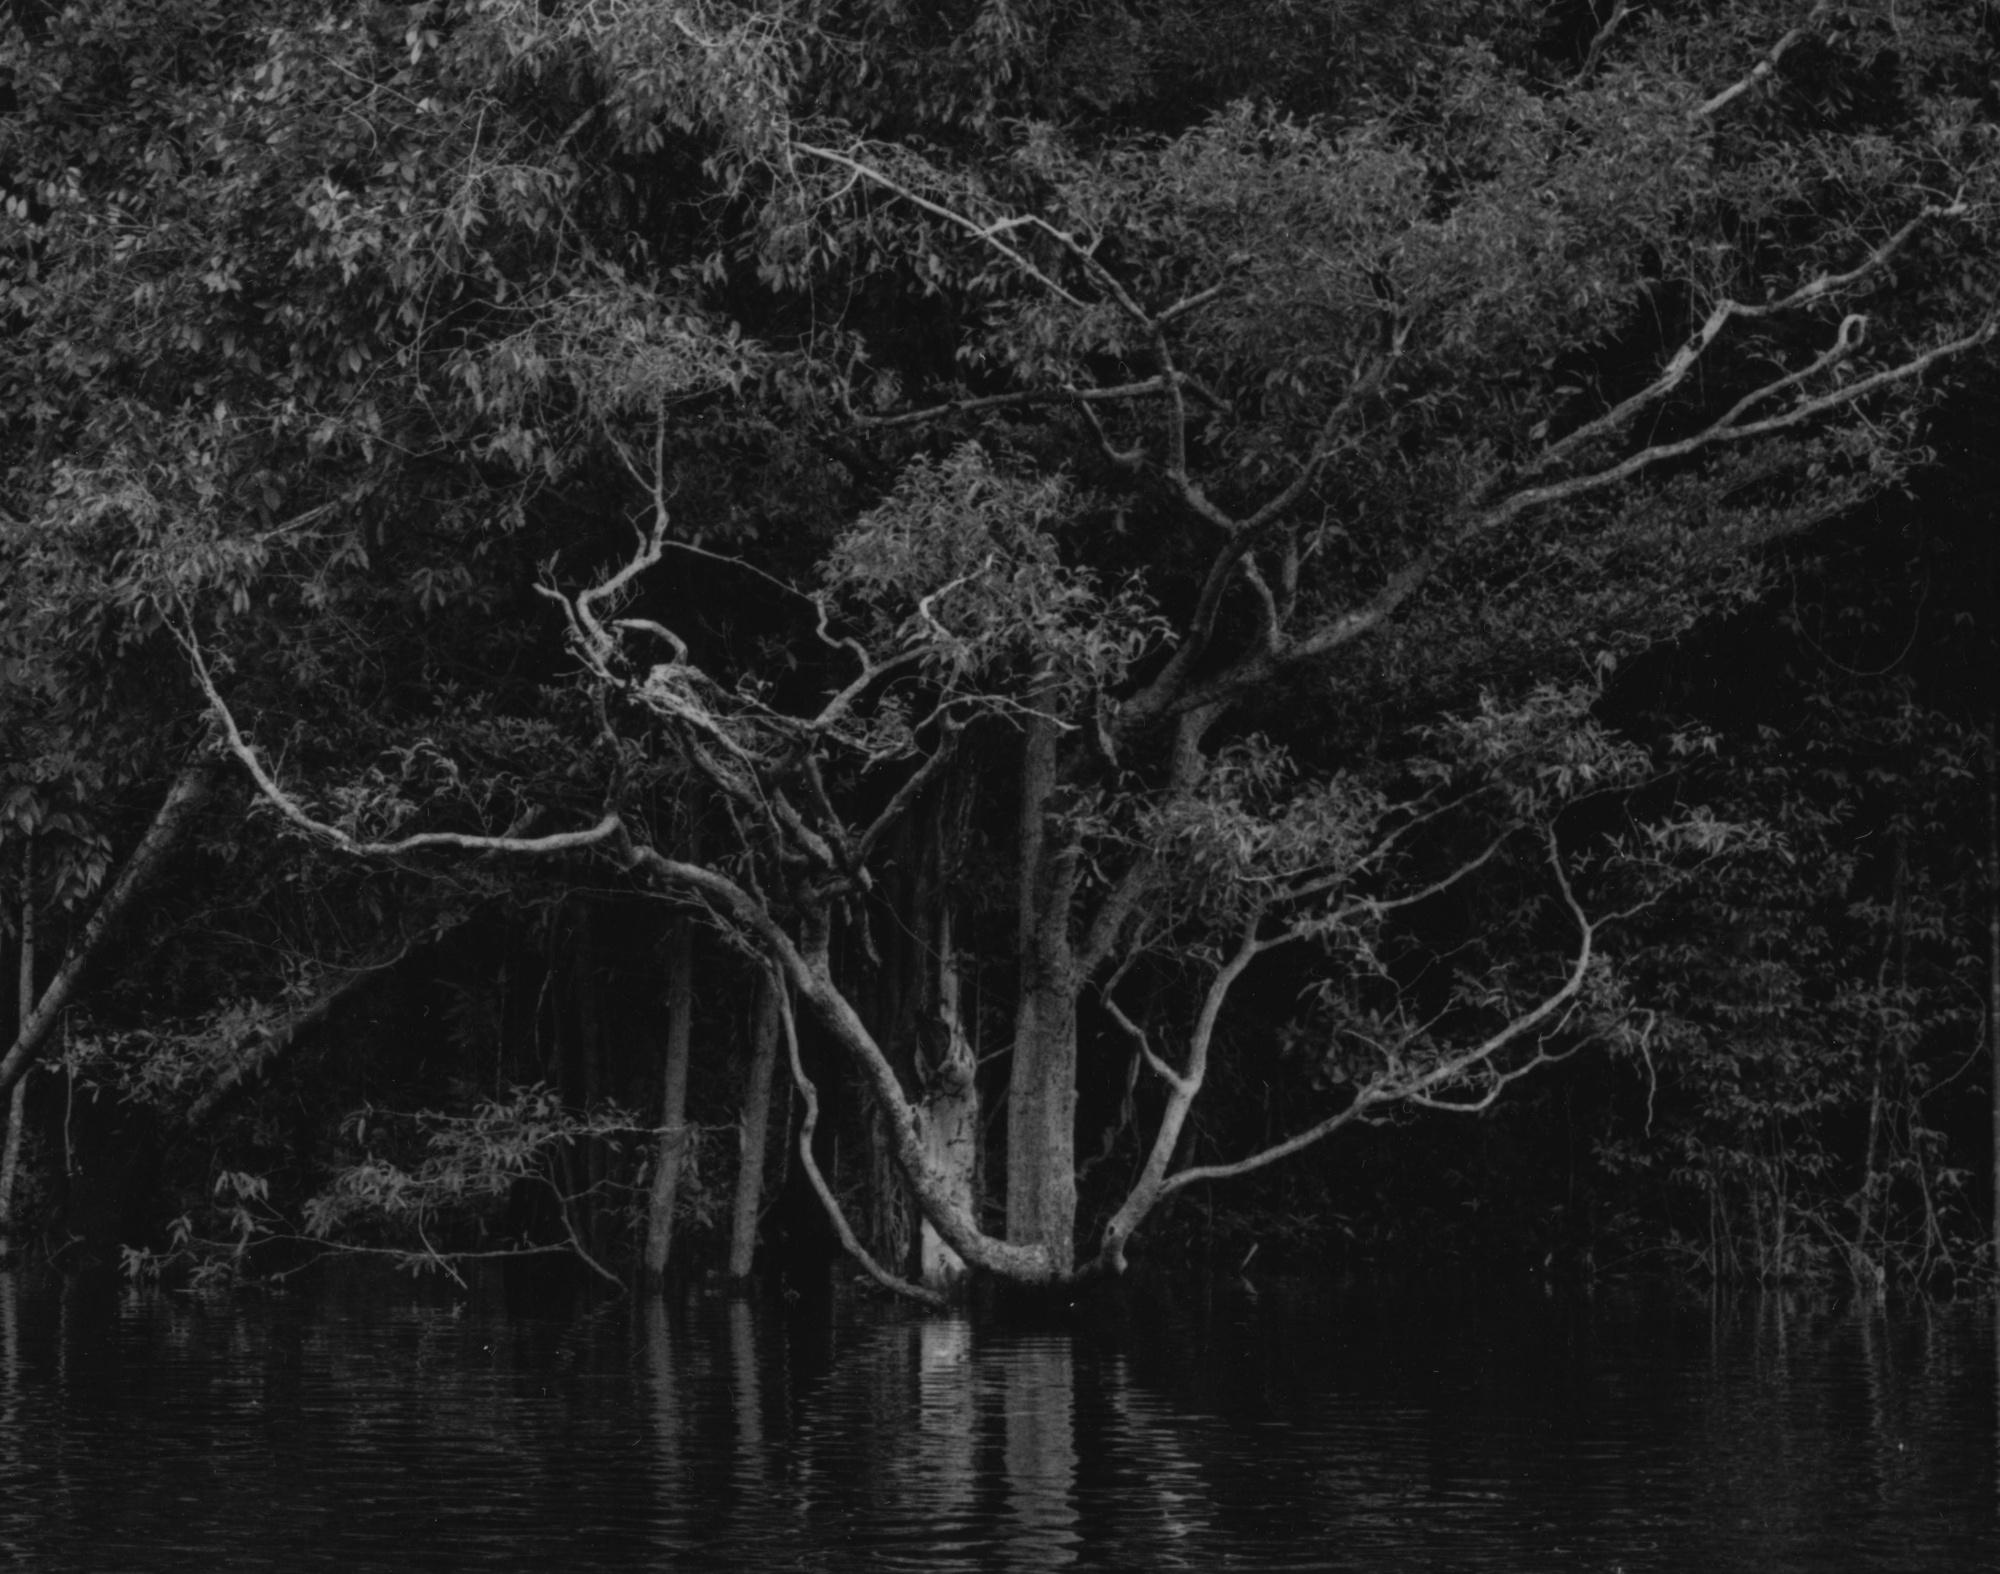 Rio Negro 14 Balthasar Burkhard, Schwarz-Weiß-Fotografie, Dschungel, Fluss – Photograph von Balthasar Burkhard 